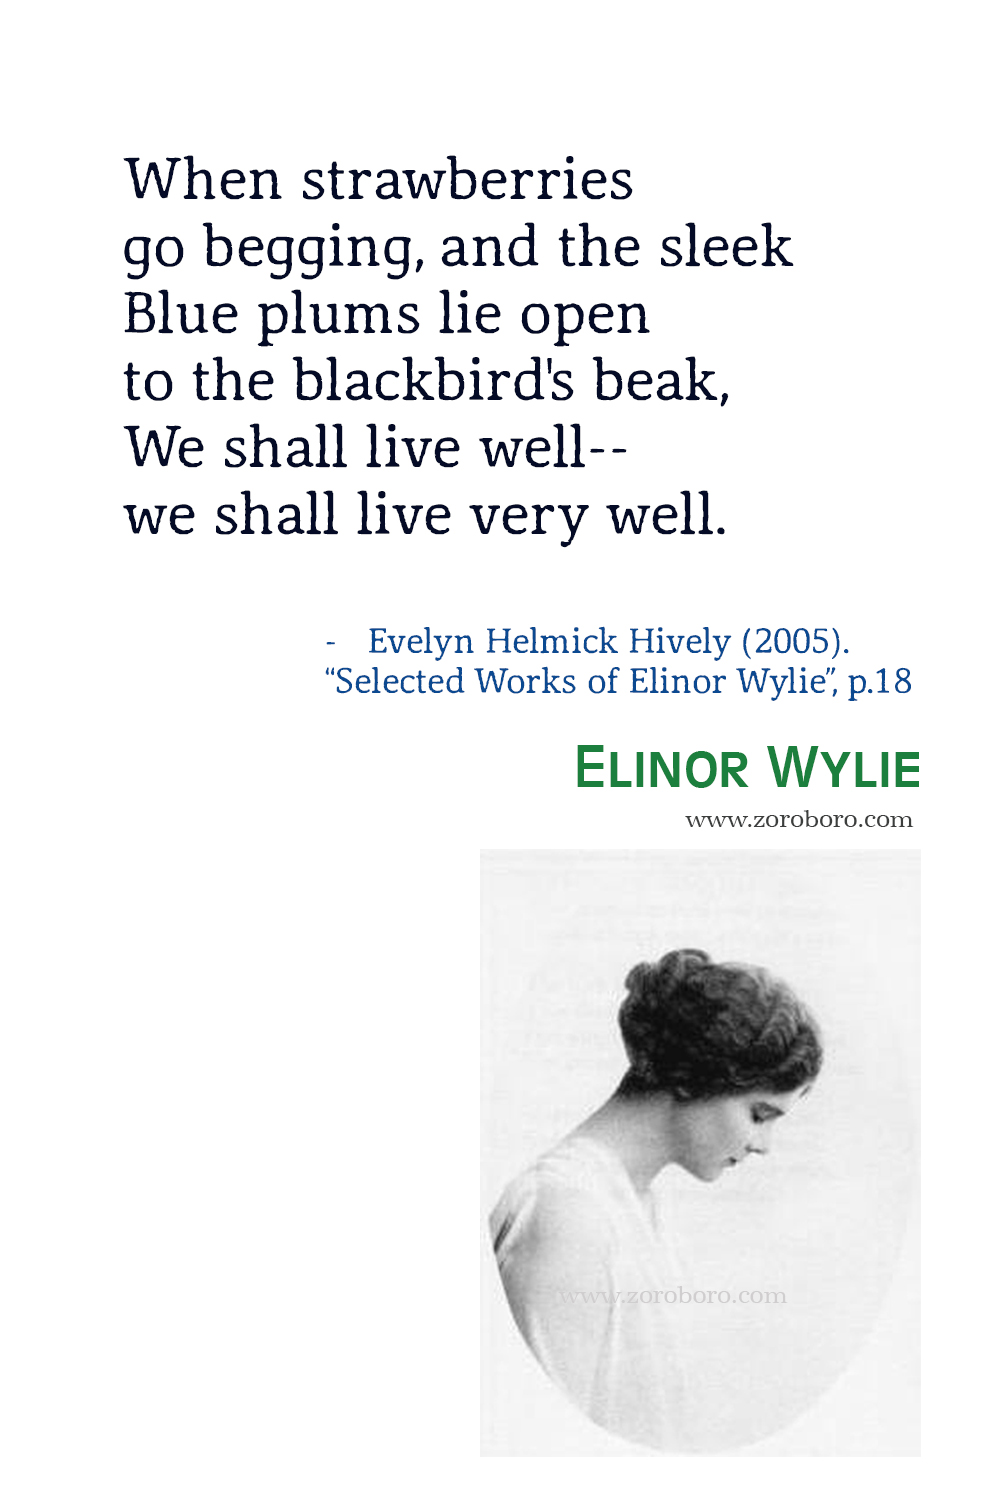 Elinor Wylie Quotes, Elinor Wylie Poet, Elinor Wylie Poetry, Elinor Wylie Poems, Elinor Wylie Books Quotes, Elinor Wylie : Selected Poems